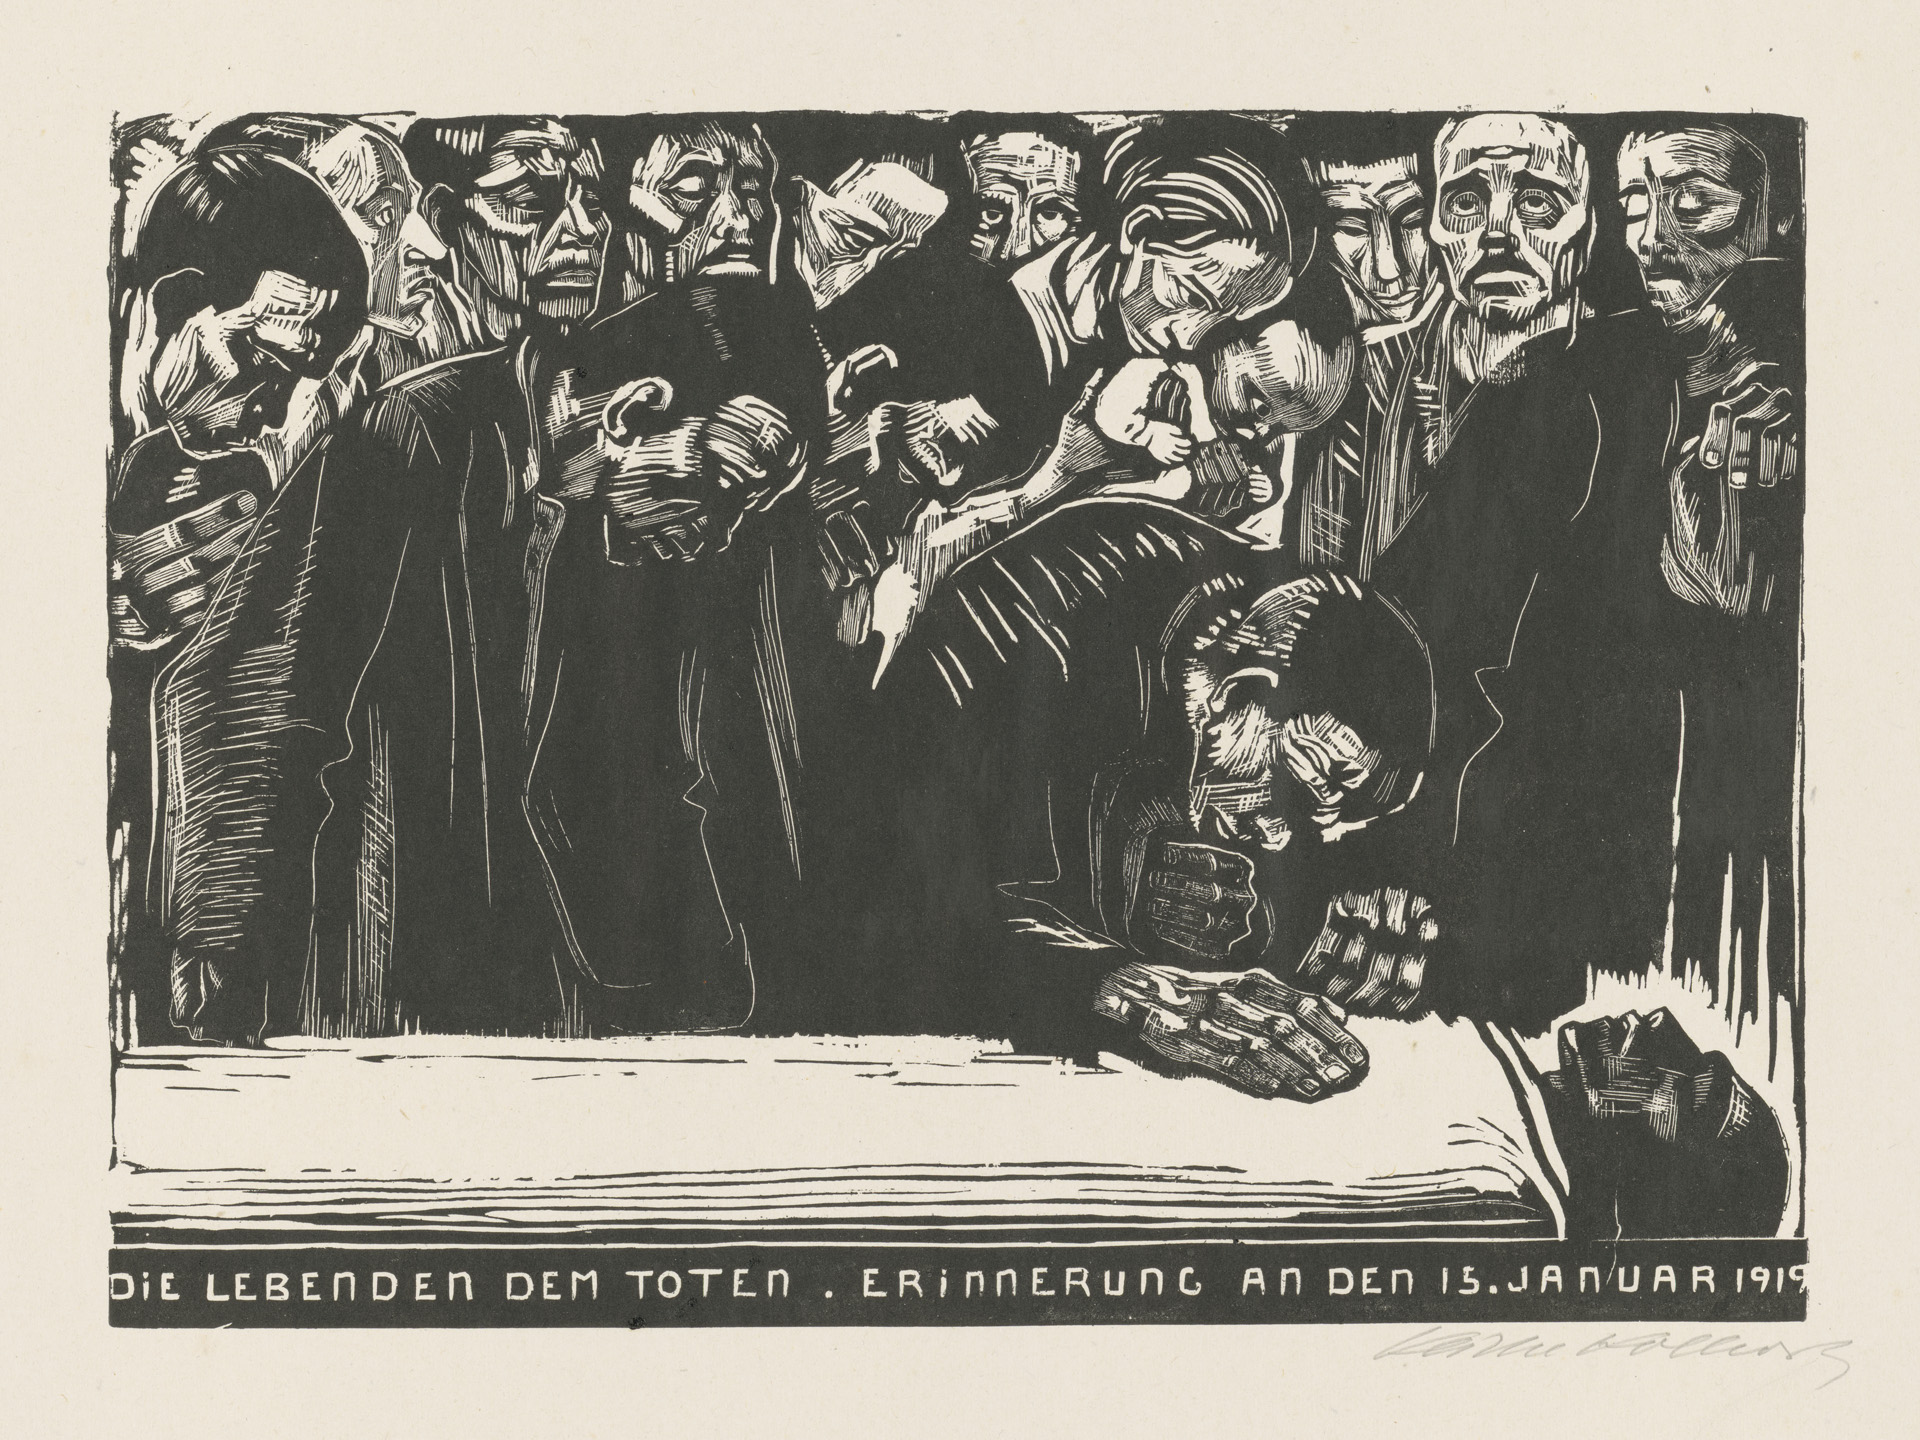 Käthe Kollwitz, En mémoire de Karl Liebknecht, troisième et dernière version, 1920, gravure sur bois, Kn 159 VI a, Collection Kollwitz de Cologne © Käthe Kollwitz Museum Köln